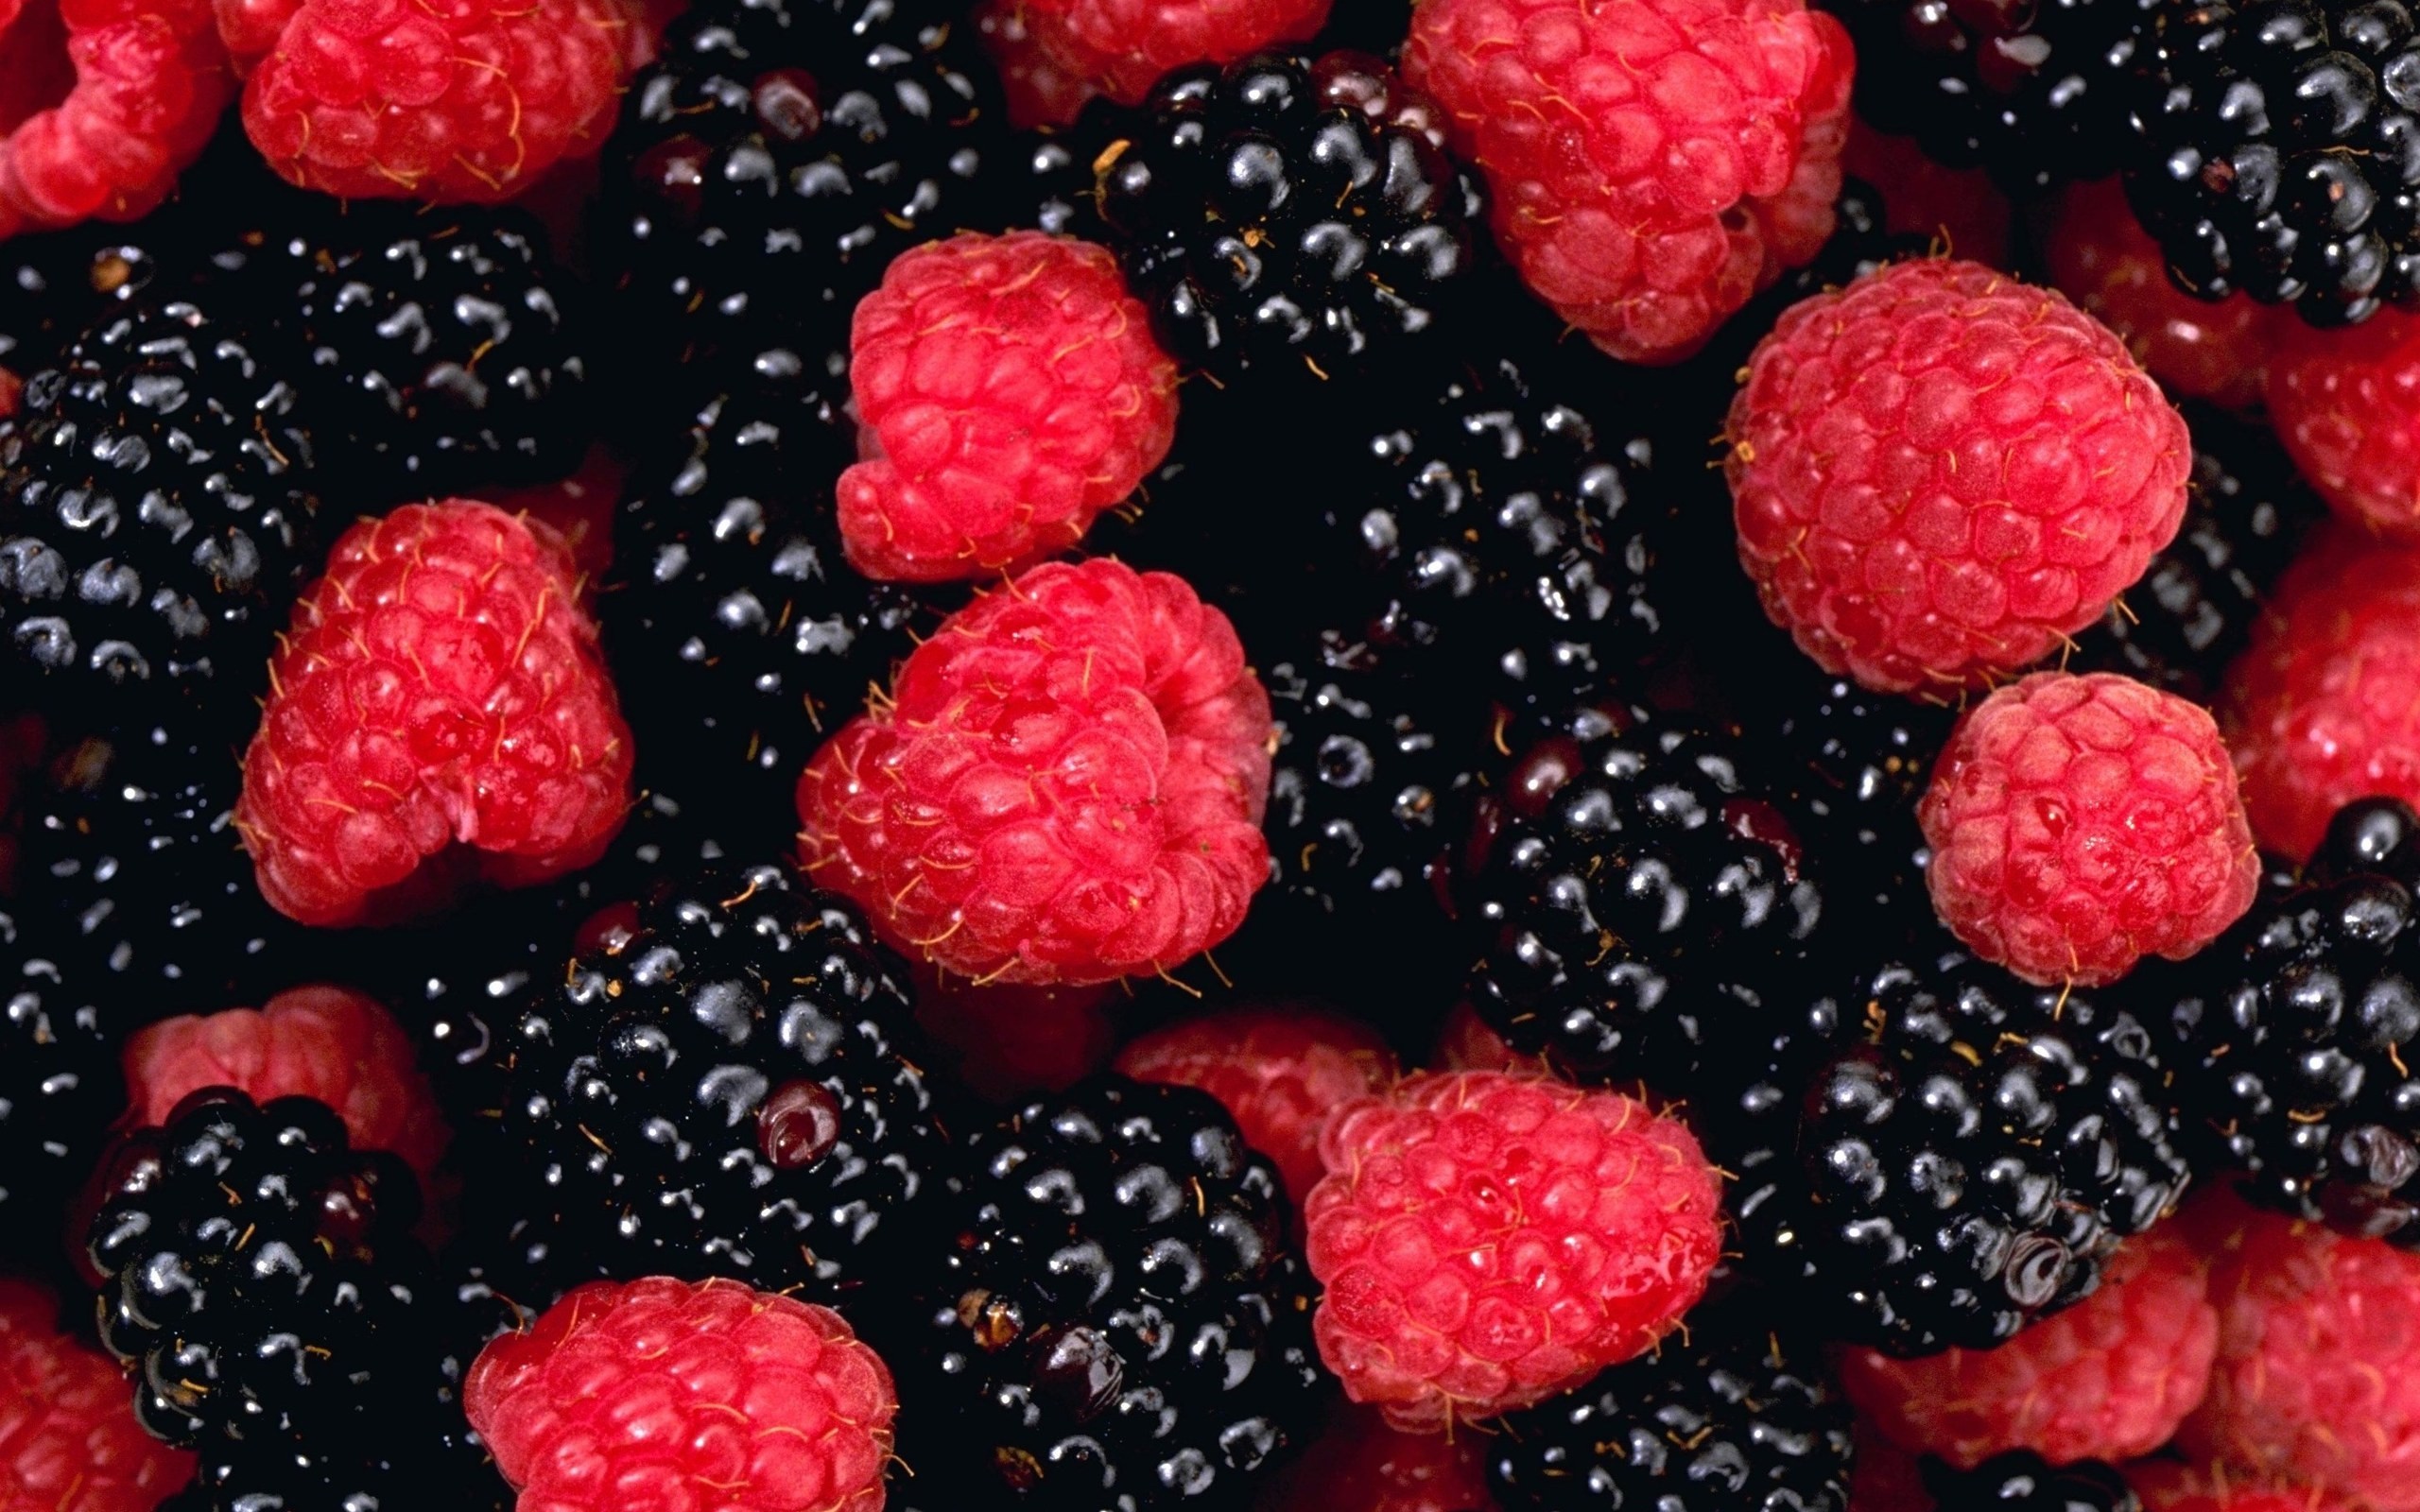 General 2560x1600 raspberries food berries fruit red black closeup macro